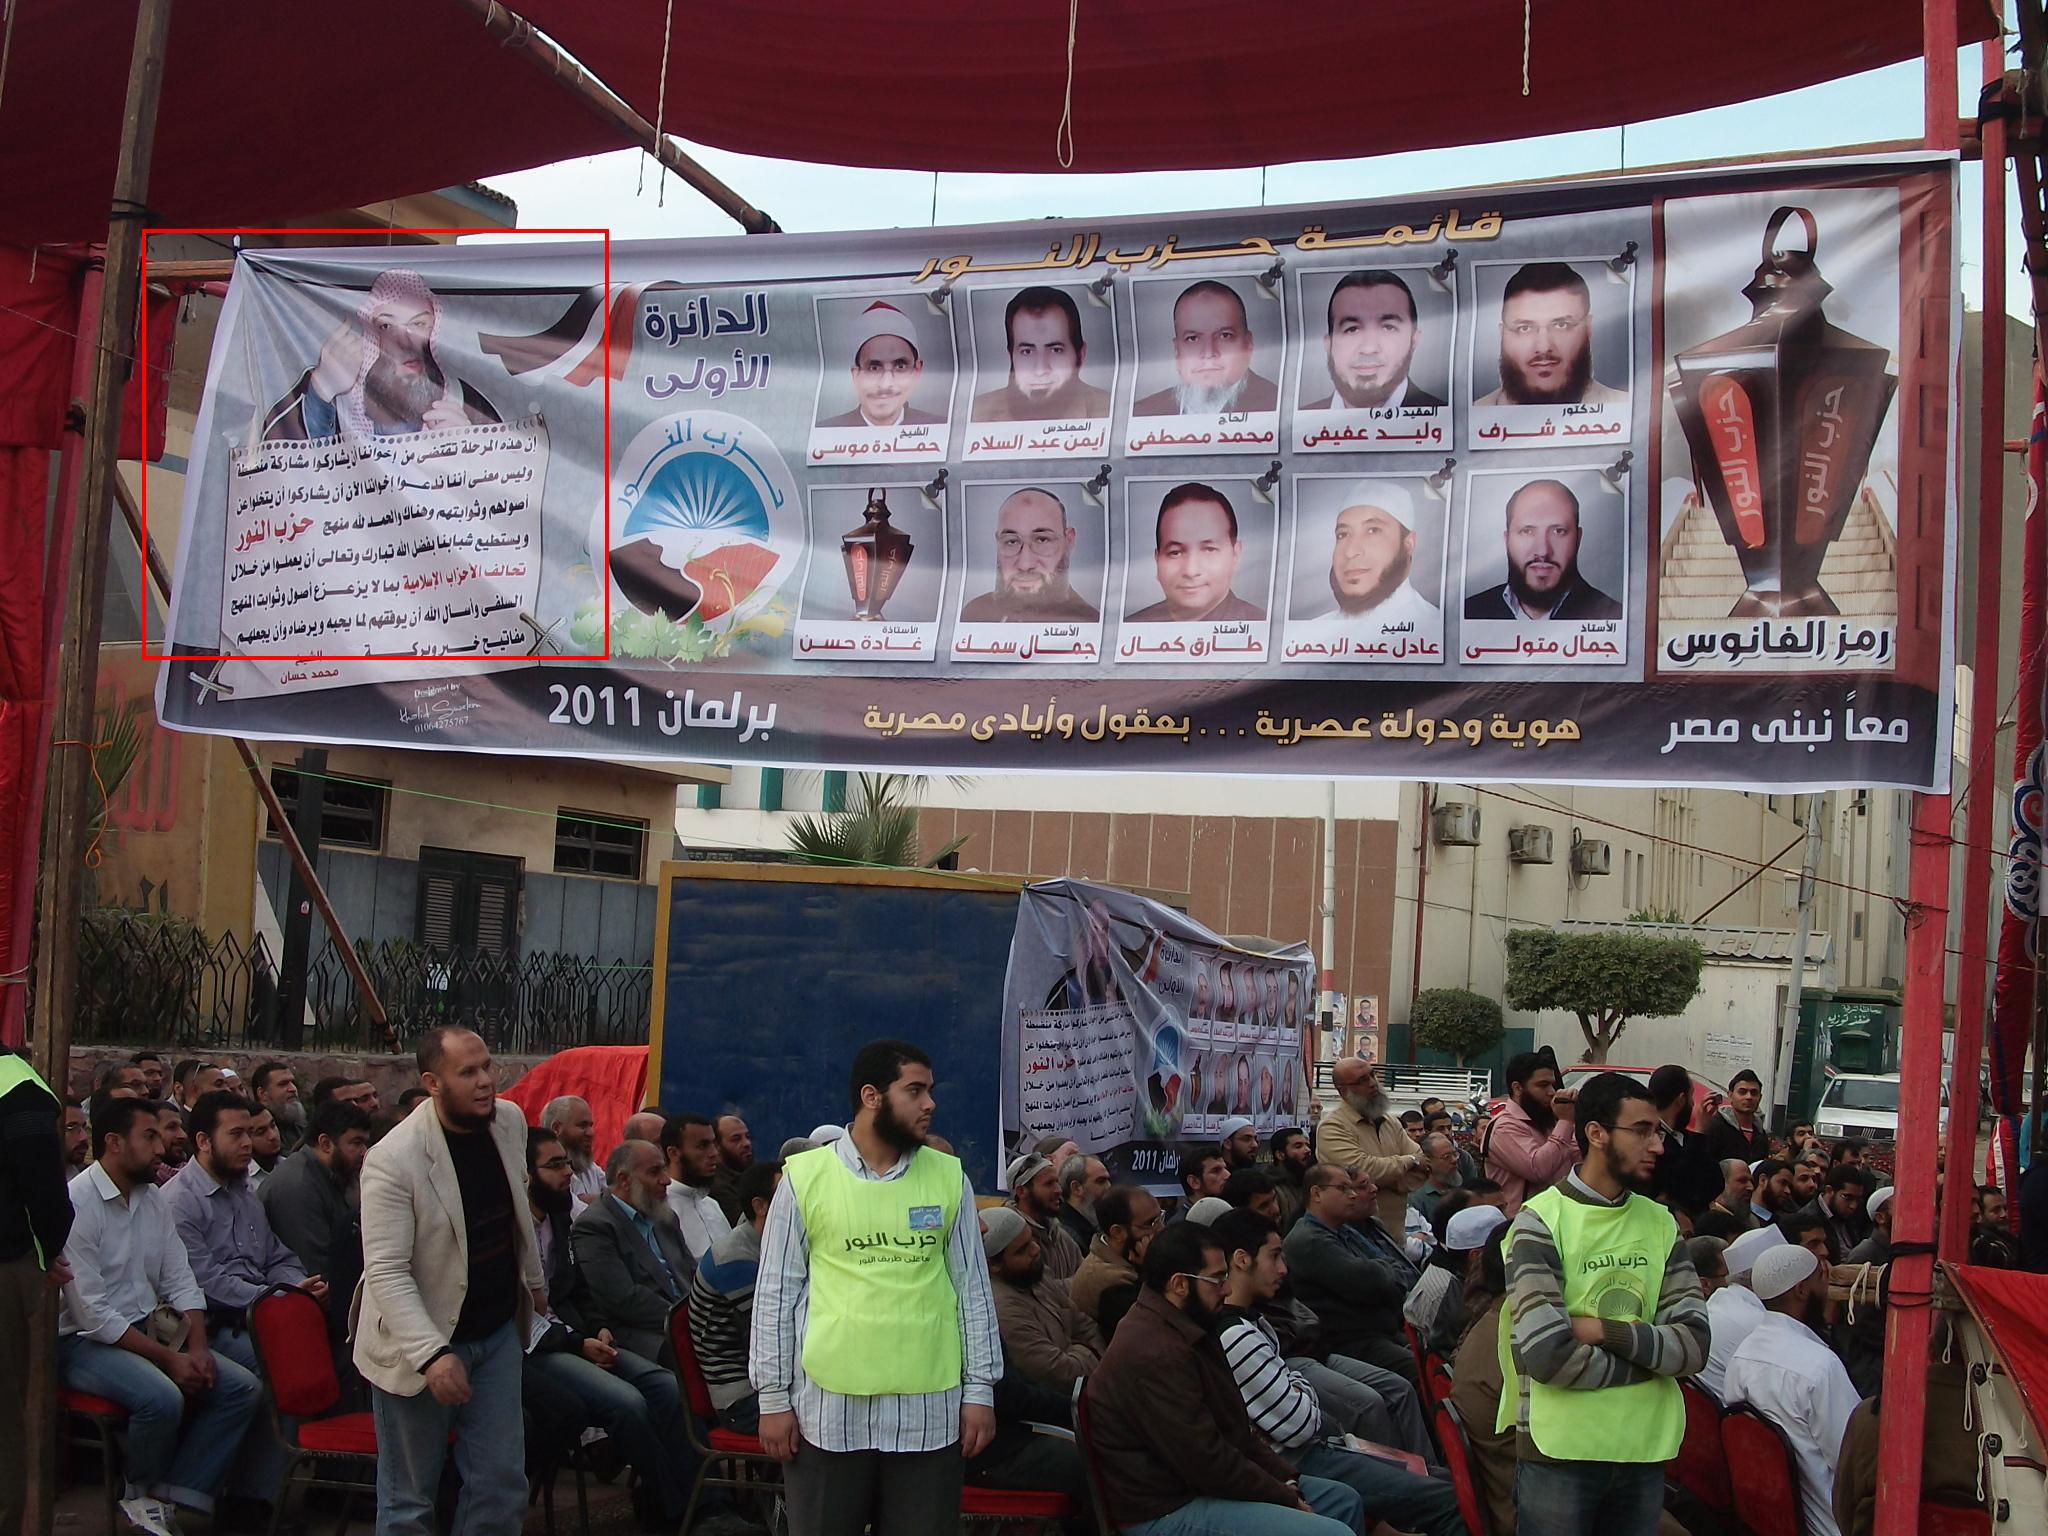  حزب النور يستخدم صورة الشيخ محمد حسان للدعاية في الشرقية رغم رفضه